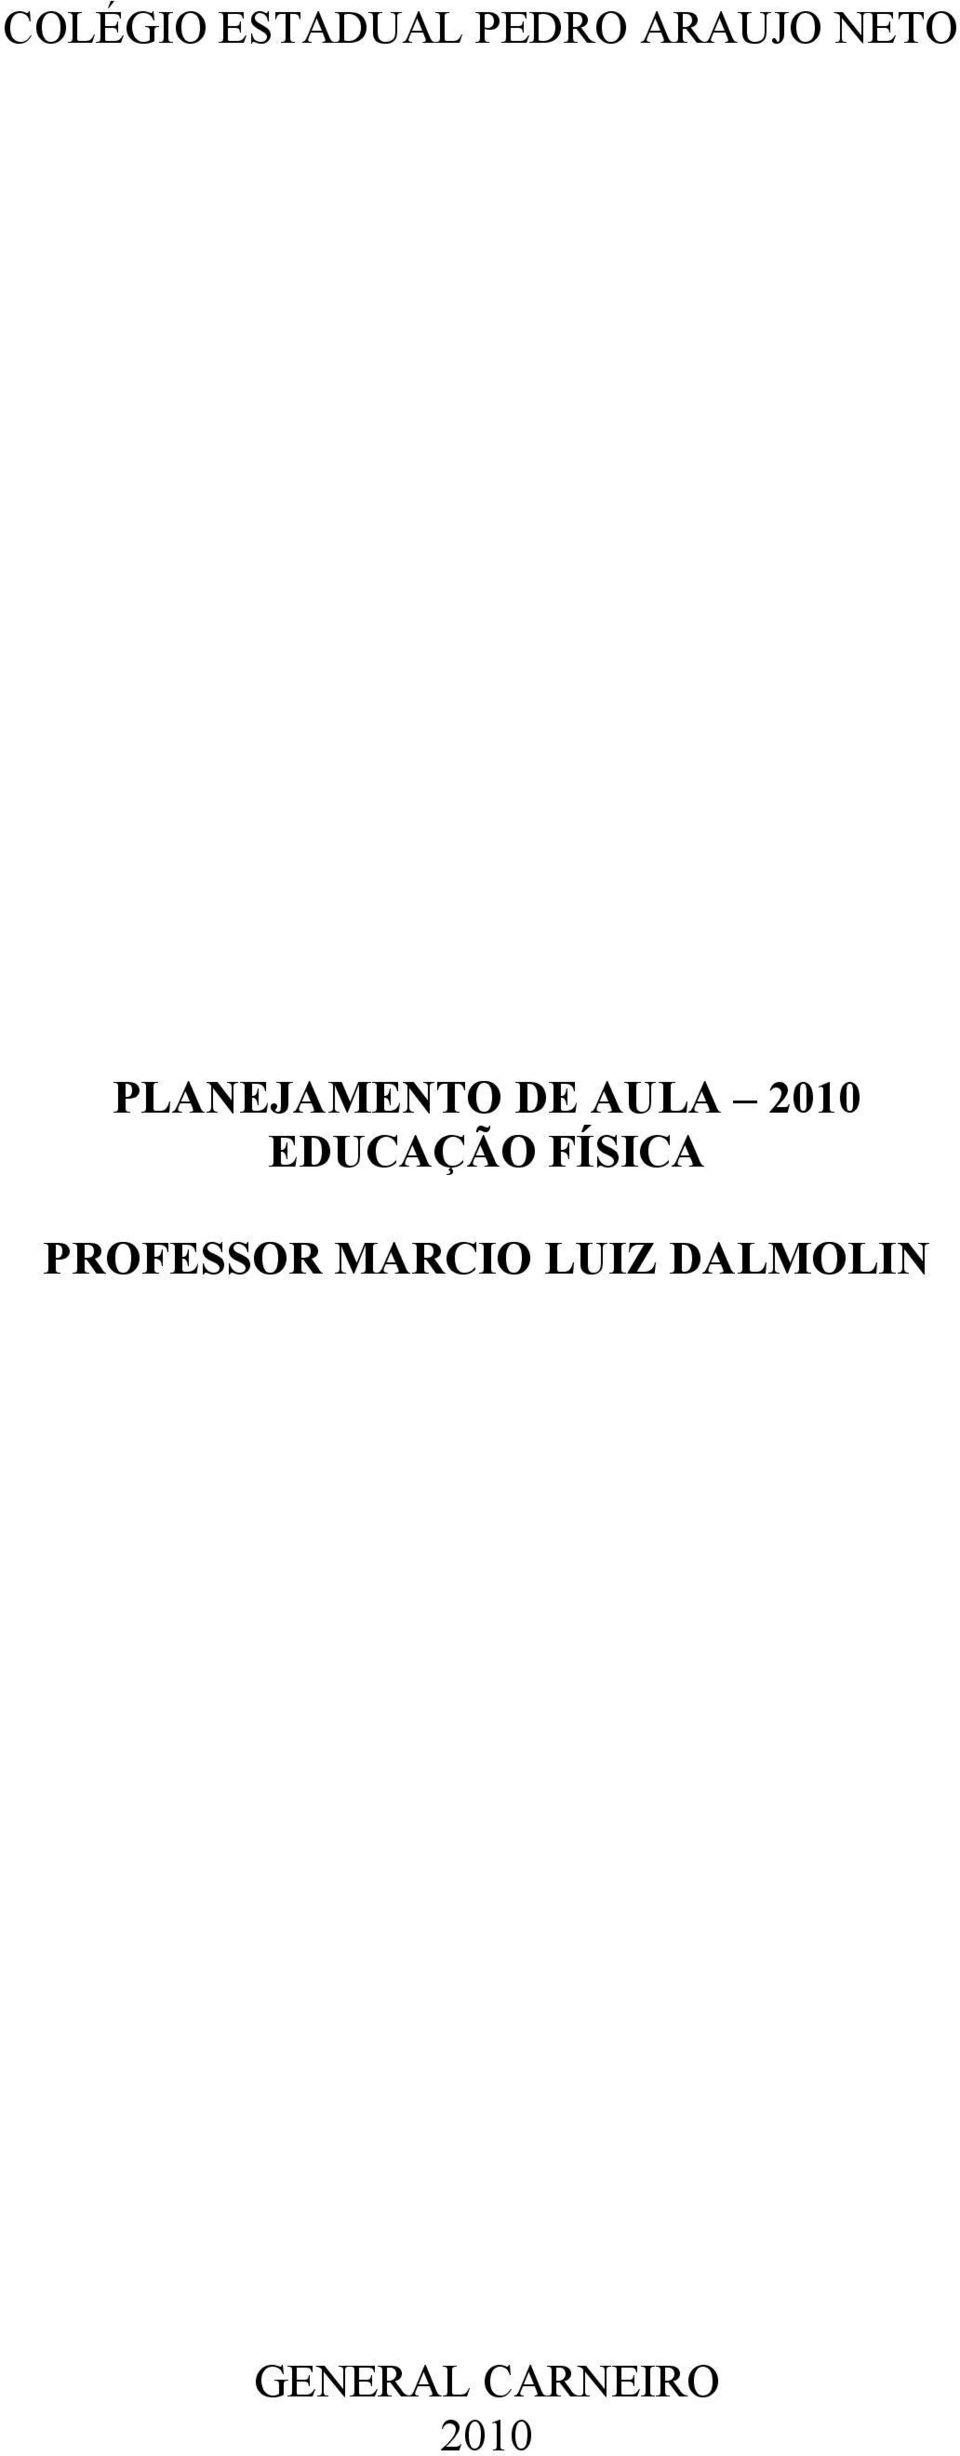 EDUCAÇÃO FÍSICA PROFESSOR MARCIO